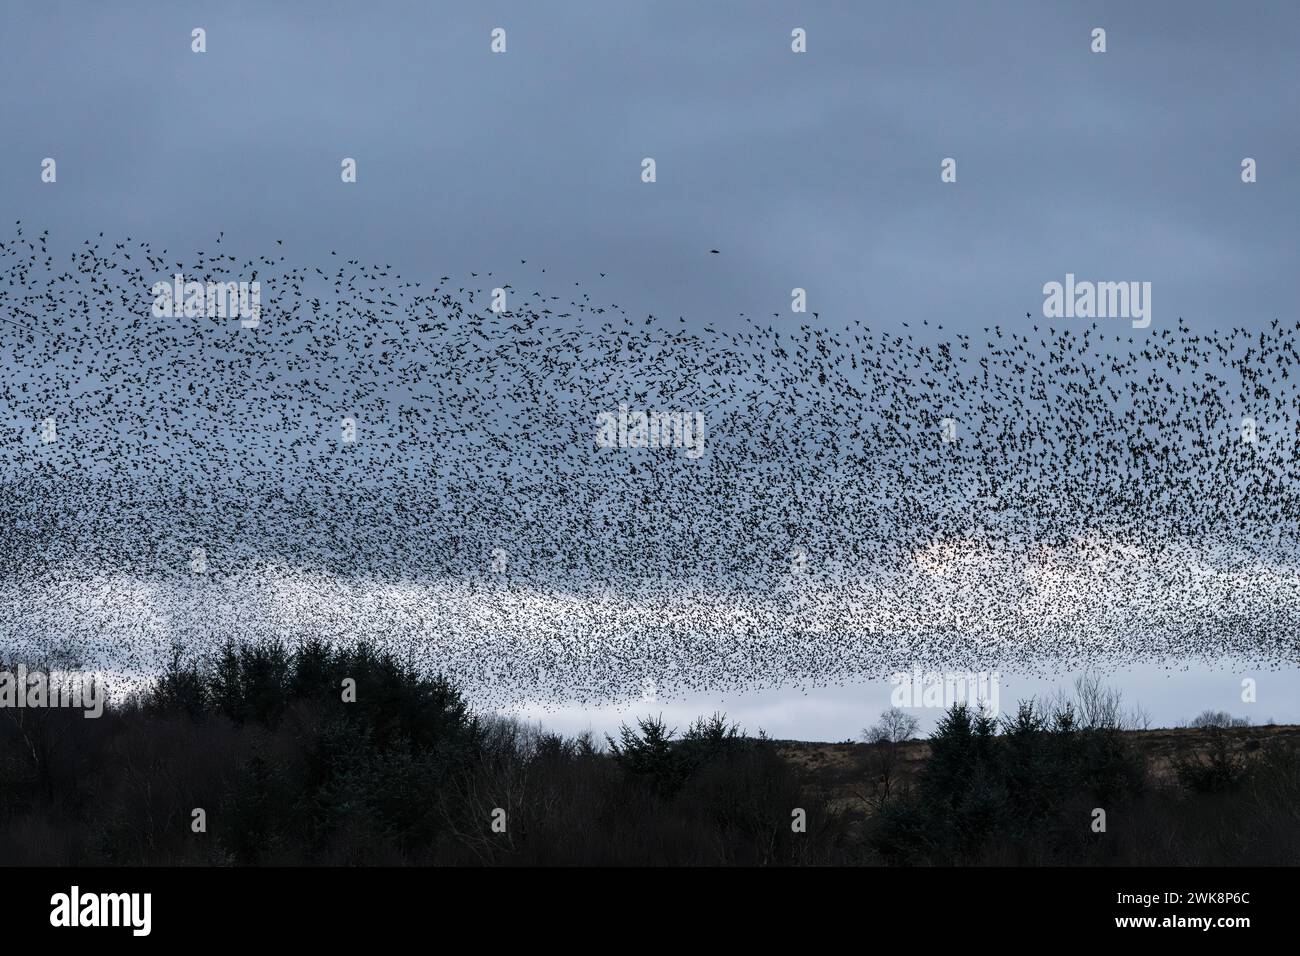 Un énorme troupeau d'étourneaux volant vers leur toit un soir d'hiver dans un bois à Llandegley, près de Llandrindod Wells, Powys, pays de Galles, Royaume-Uni Banque D'Images